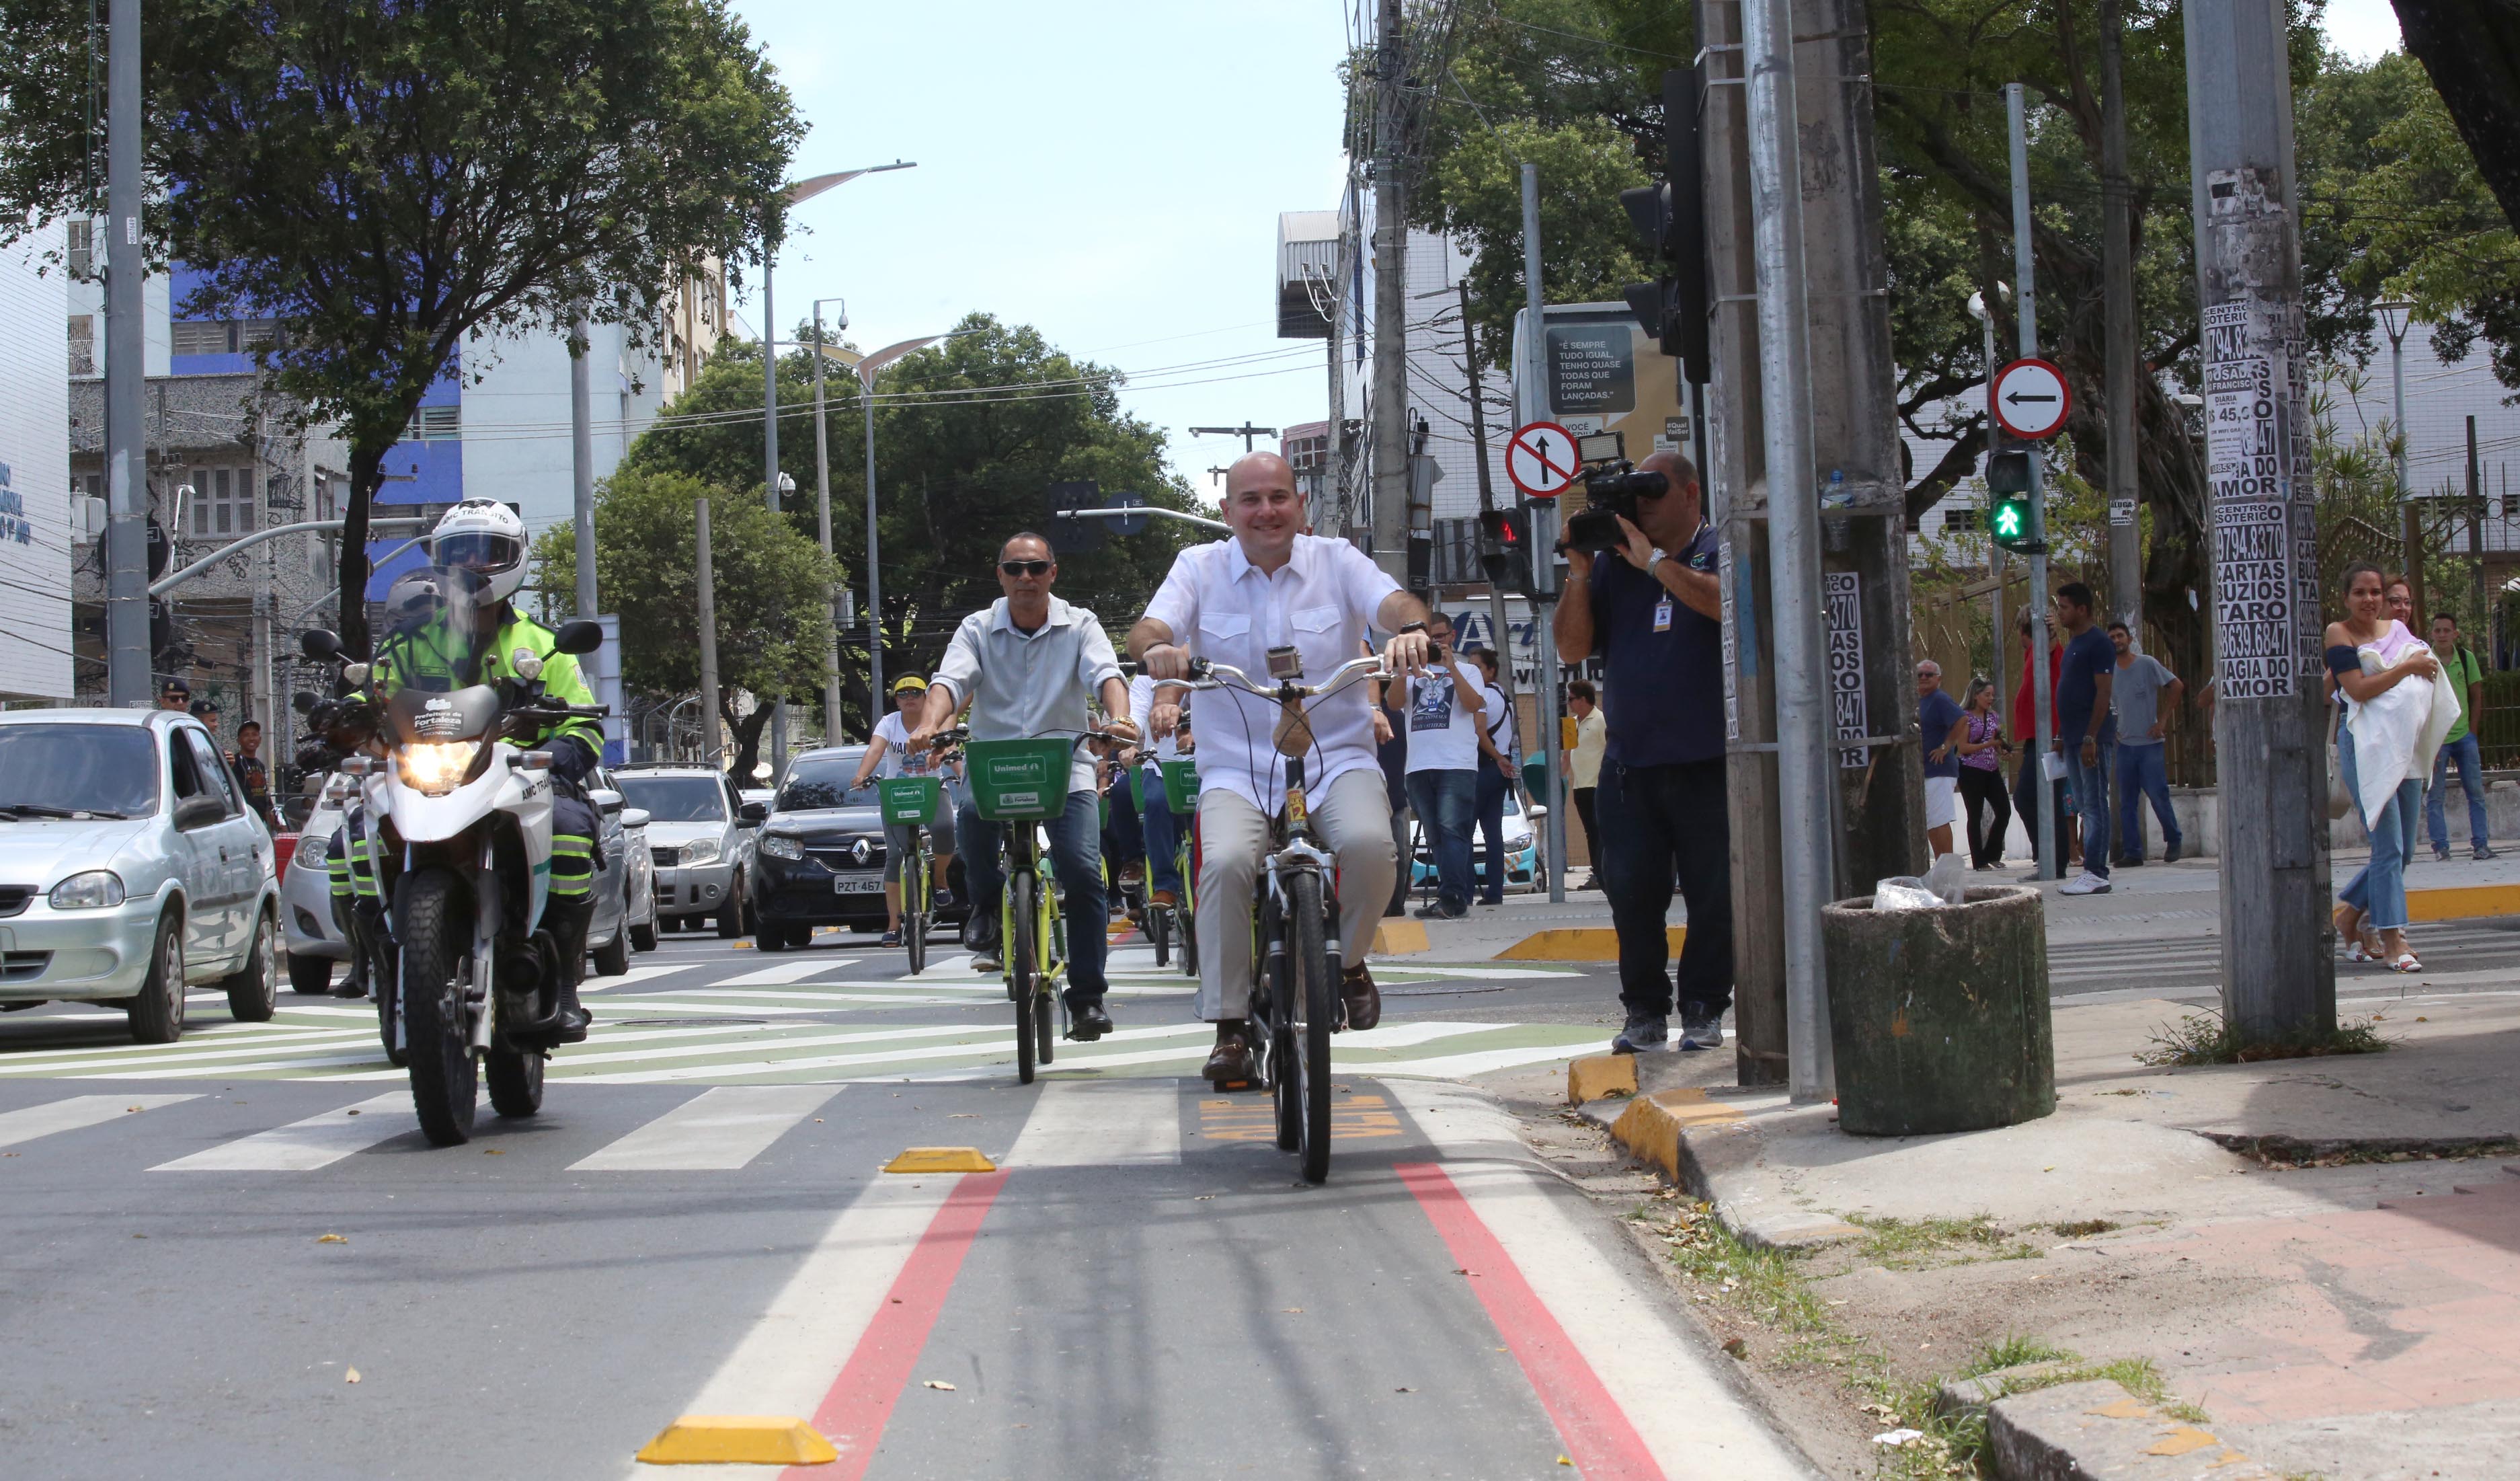 prefeito andando de bicicleta por avenida e pessoas acompanhando ao lado